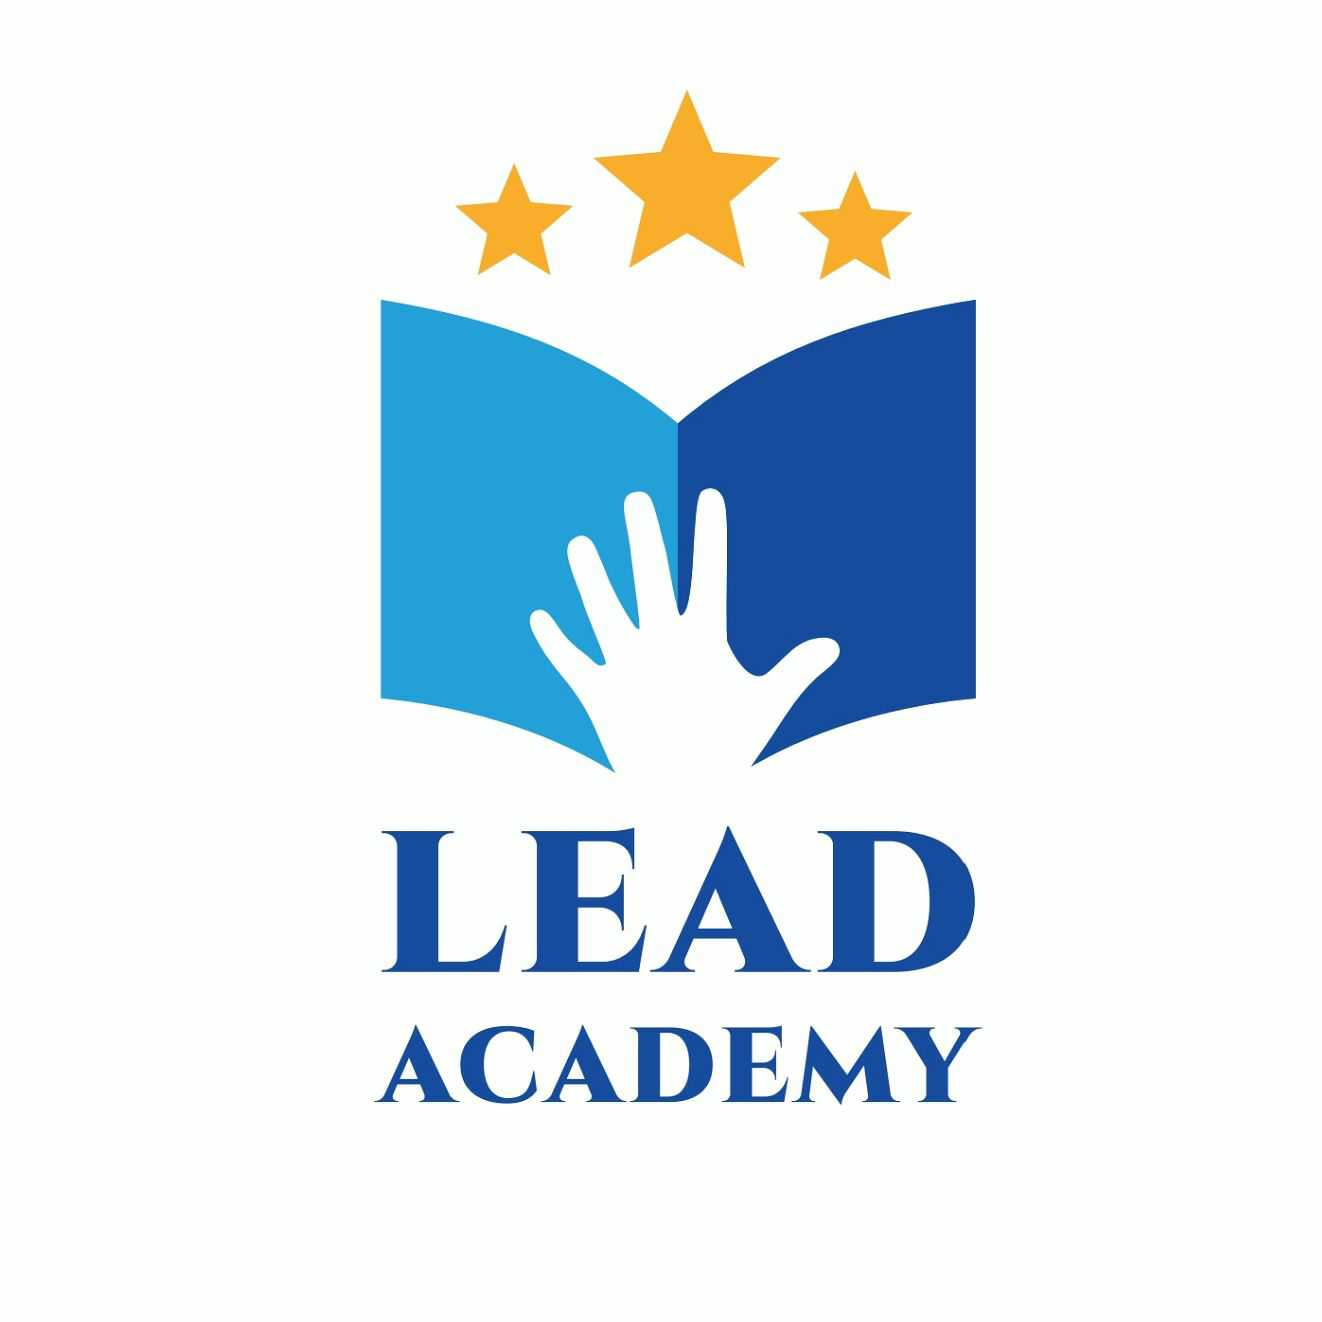 Lead academy | Teachmint